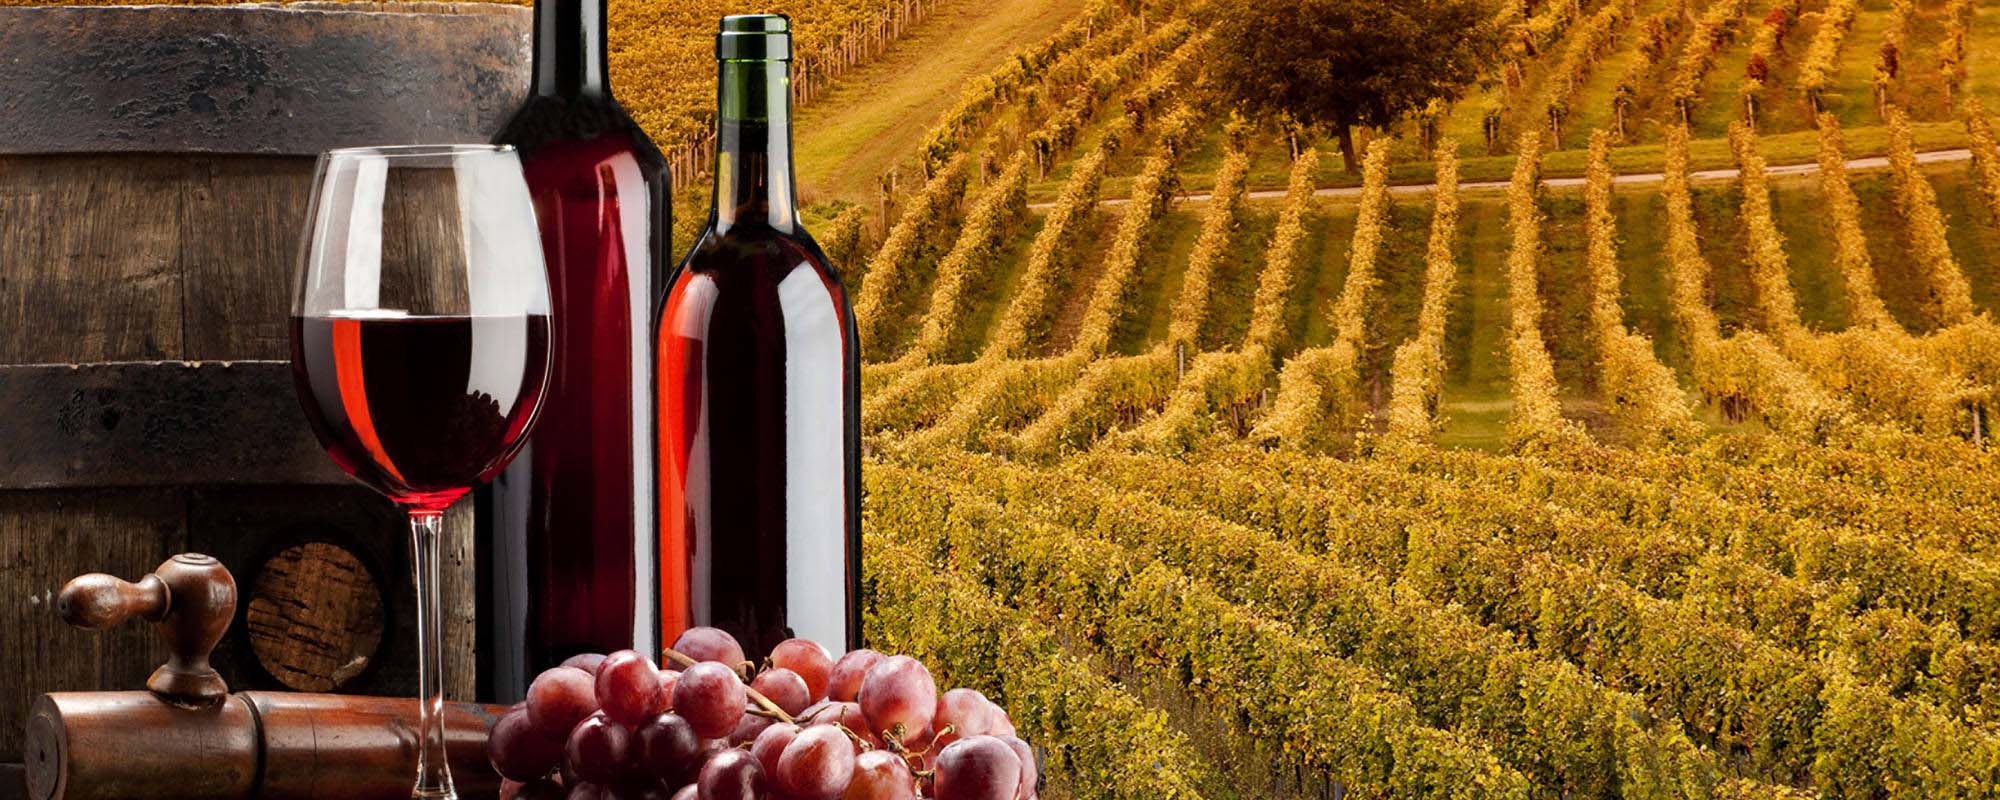 Foto de un campo de vino con dos botellas y un vaso de vino.